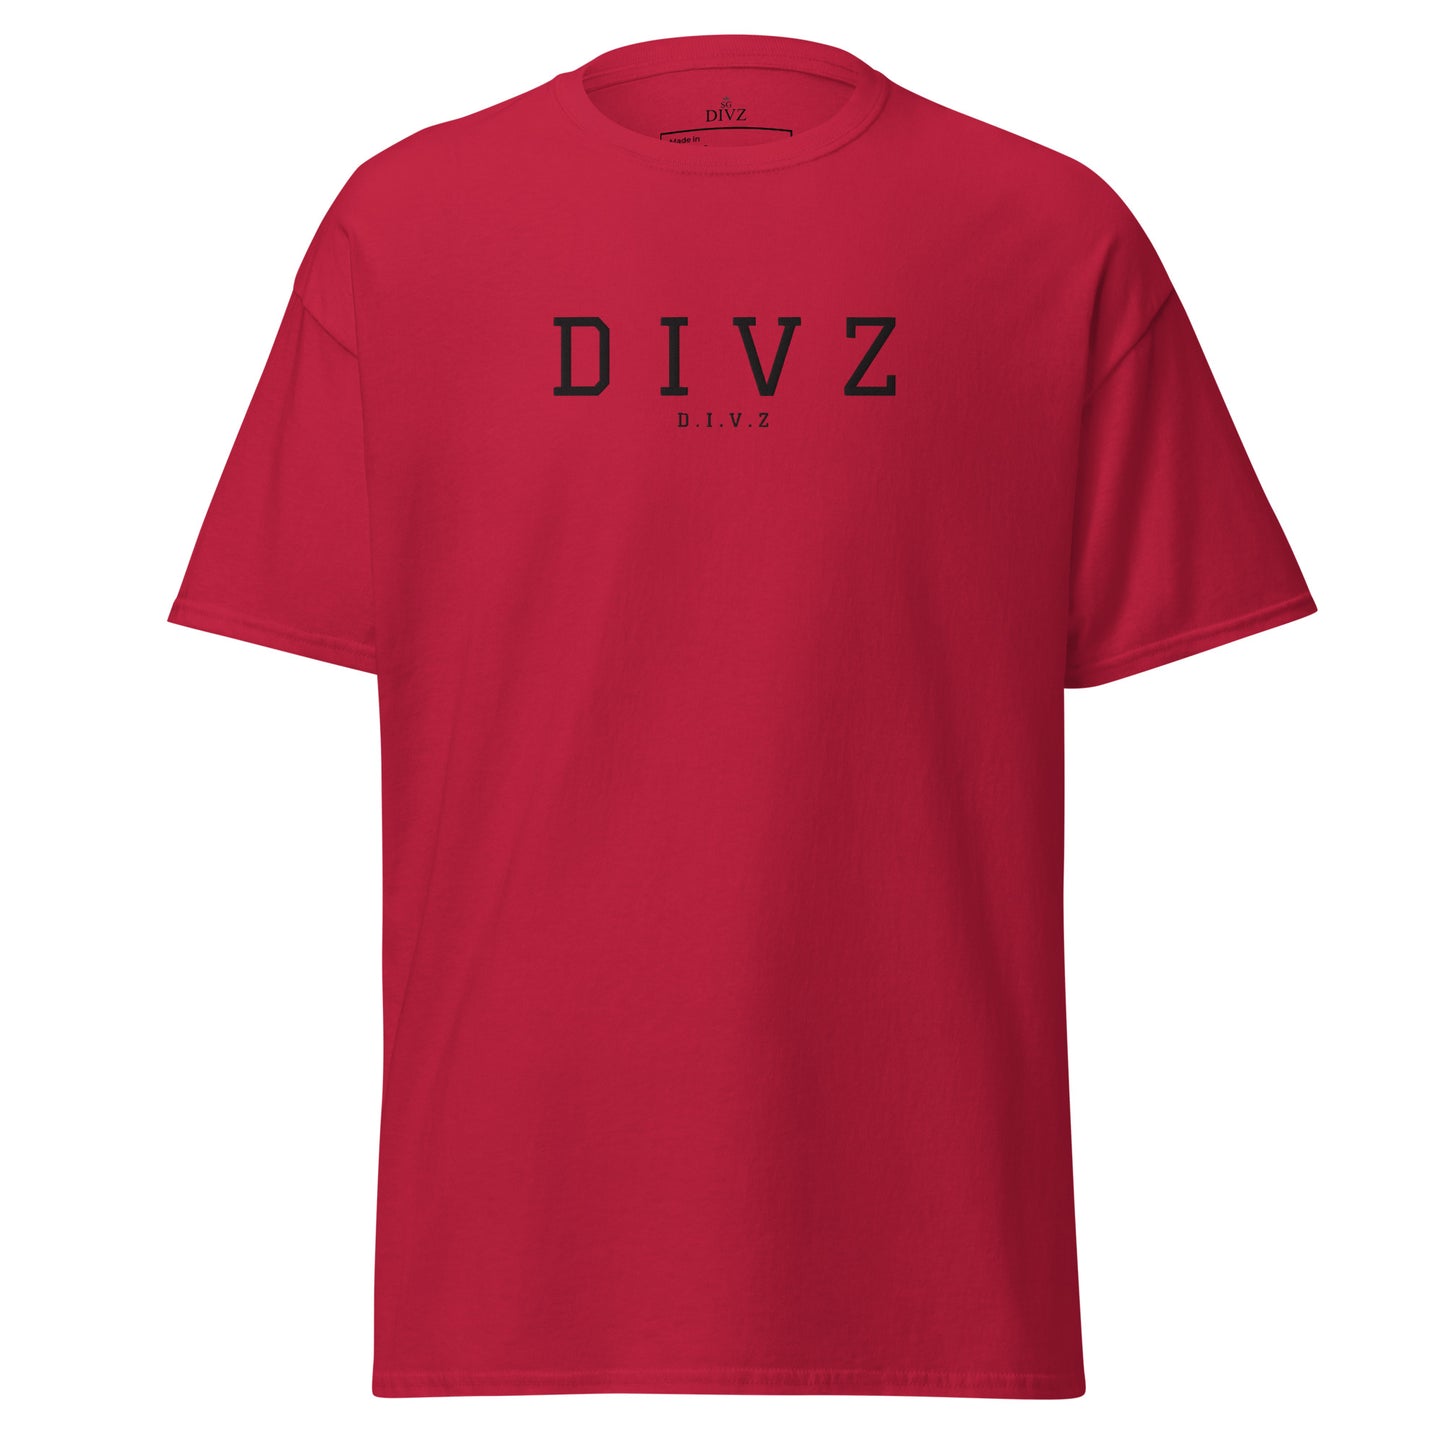 Divz Classic T-shirt